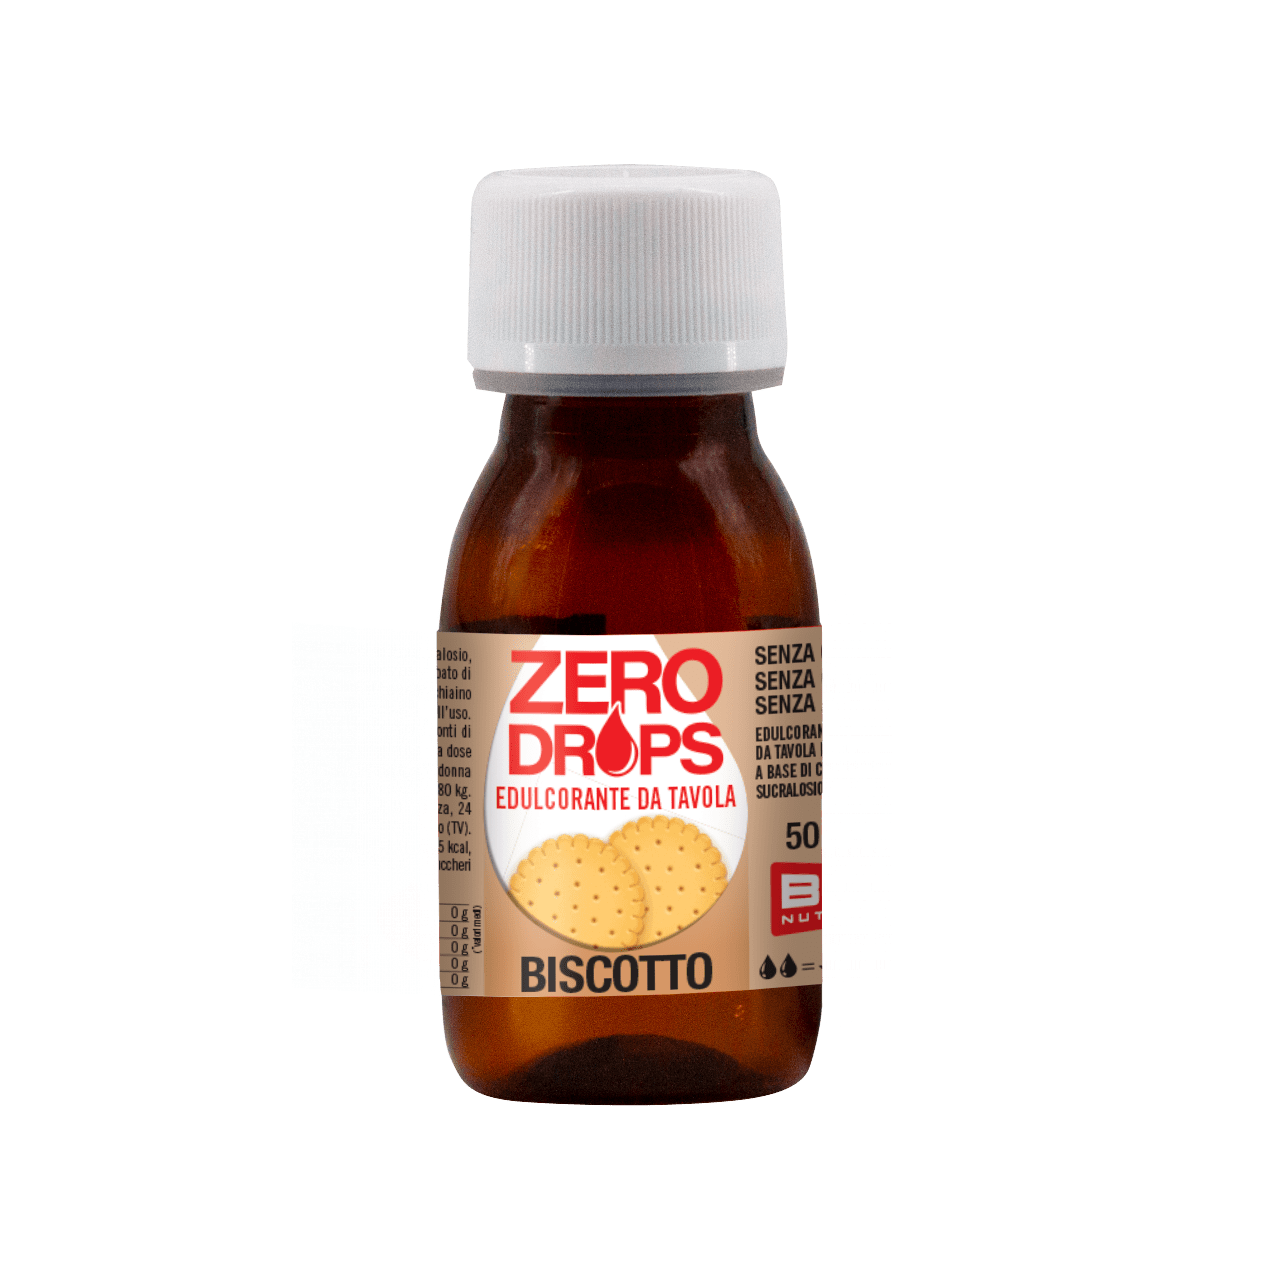 Zero Drops Edulcorante Liquido Zero Kcal 50ml gusto BISCOTTO